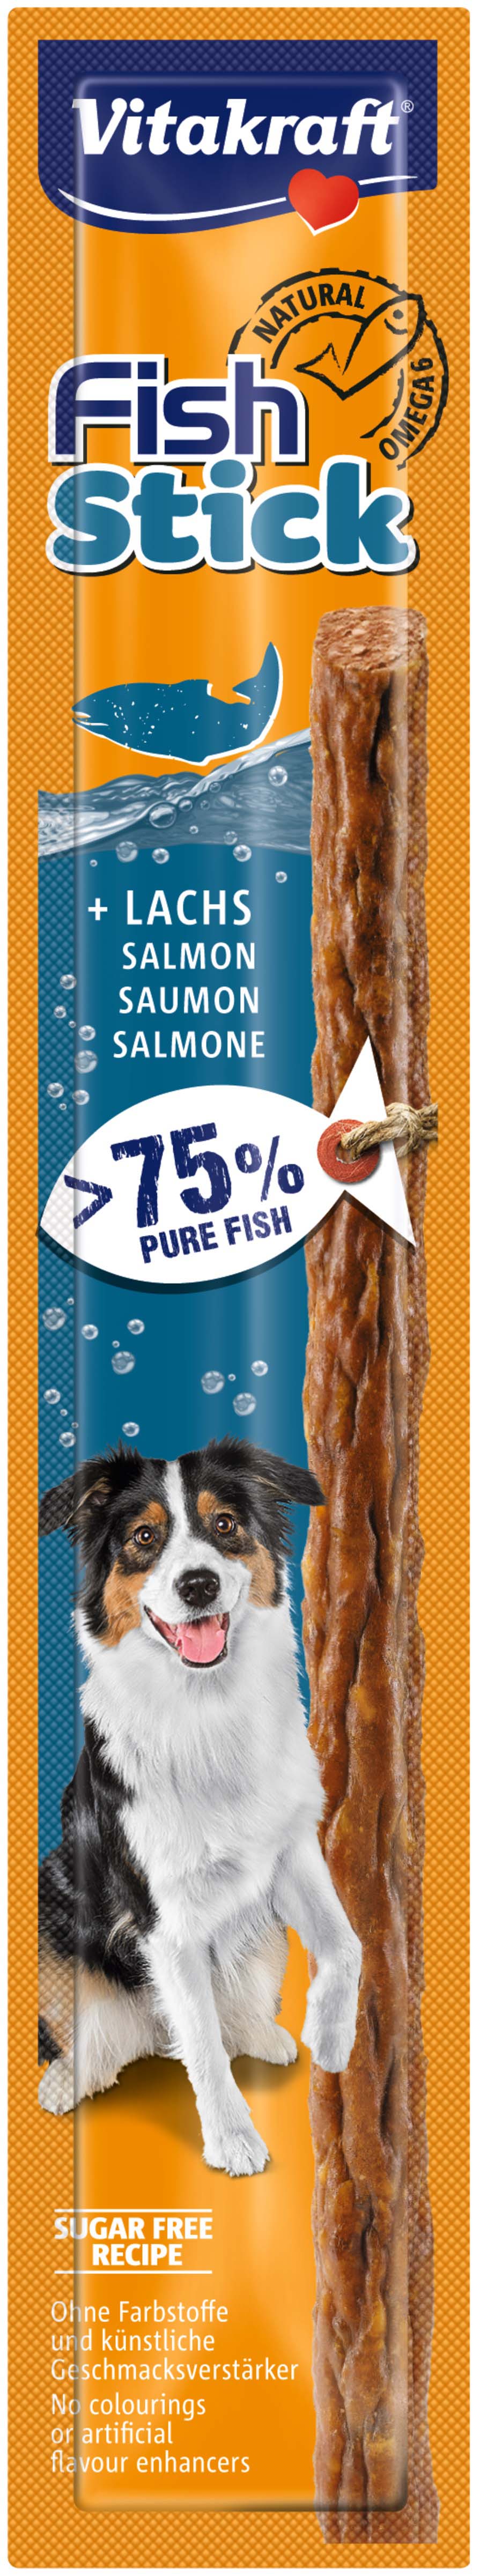 Vitakraft delicatese pentru câini fish stick cu somon, 1 bucată, 15g